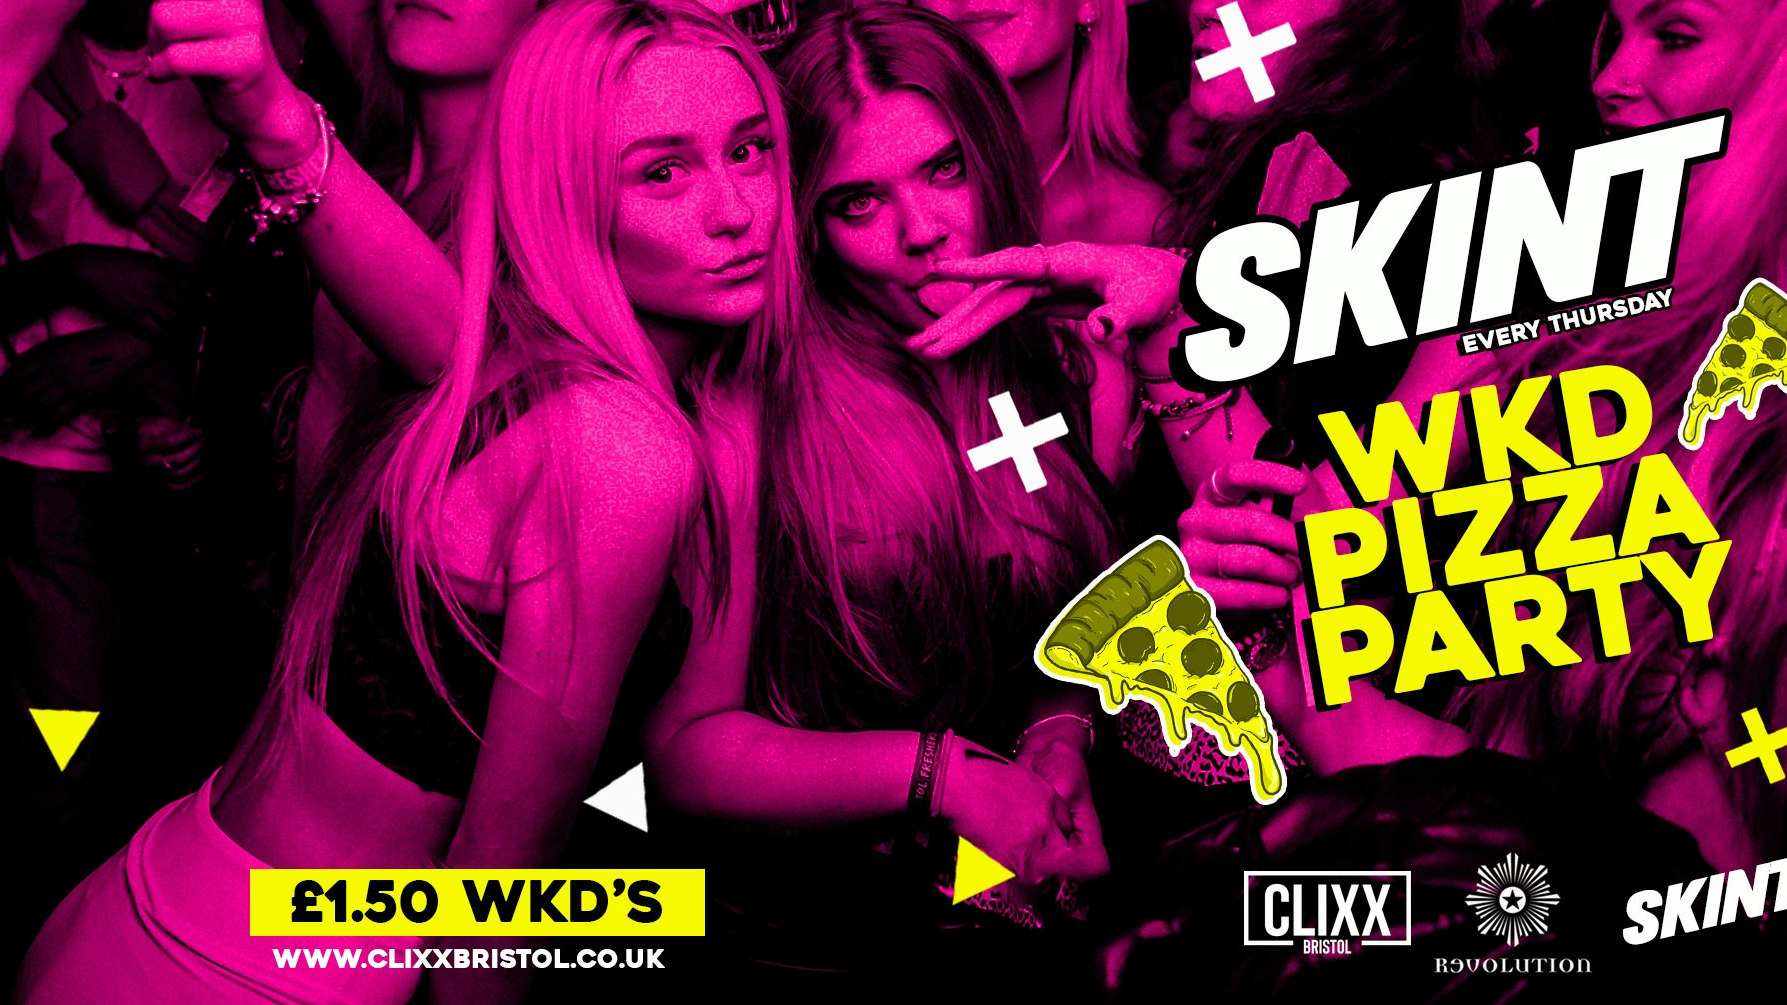 SKINT – WKD PIZZA PARTY! / £1.50 WKD’S All night!! – £2 Tickets + A Free shot